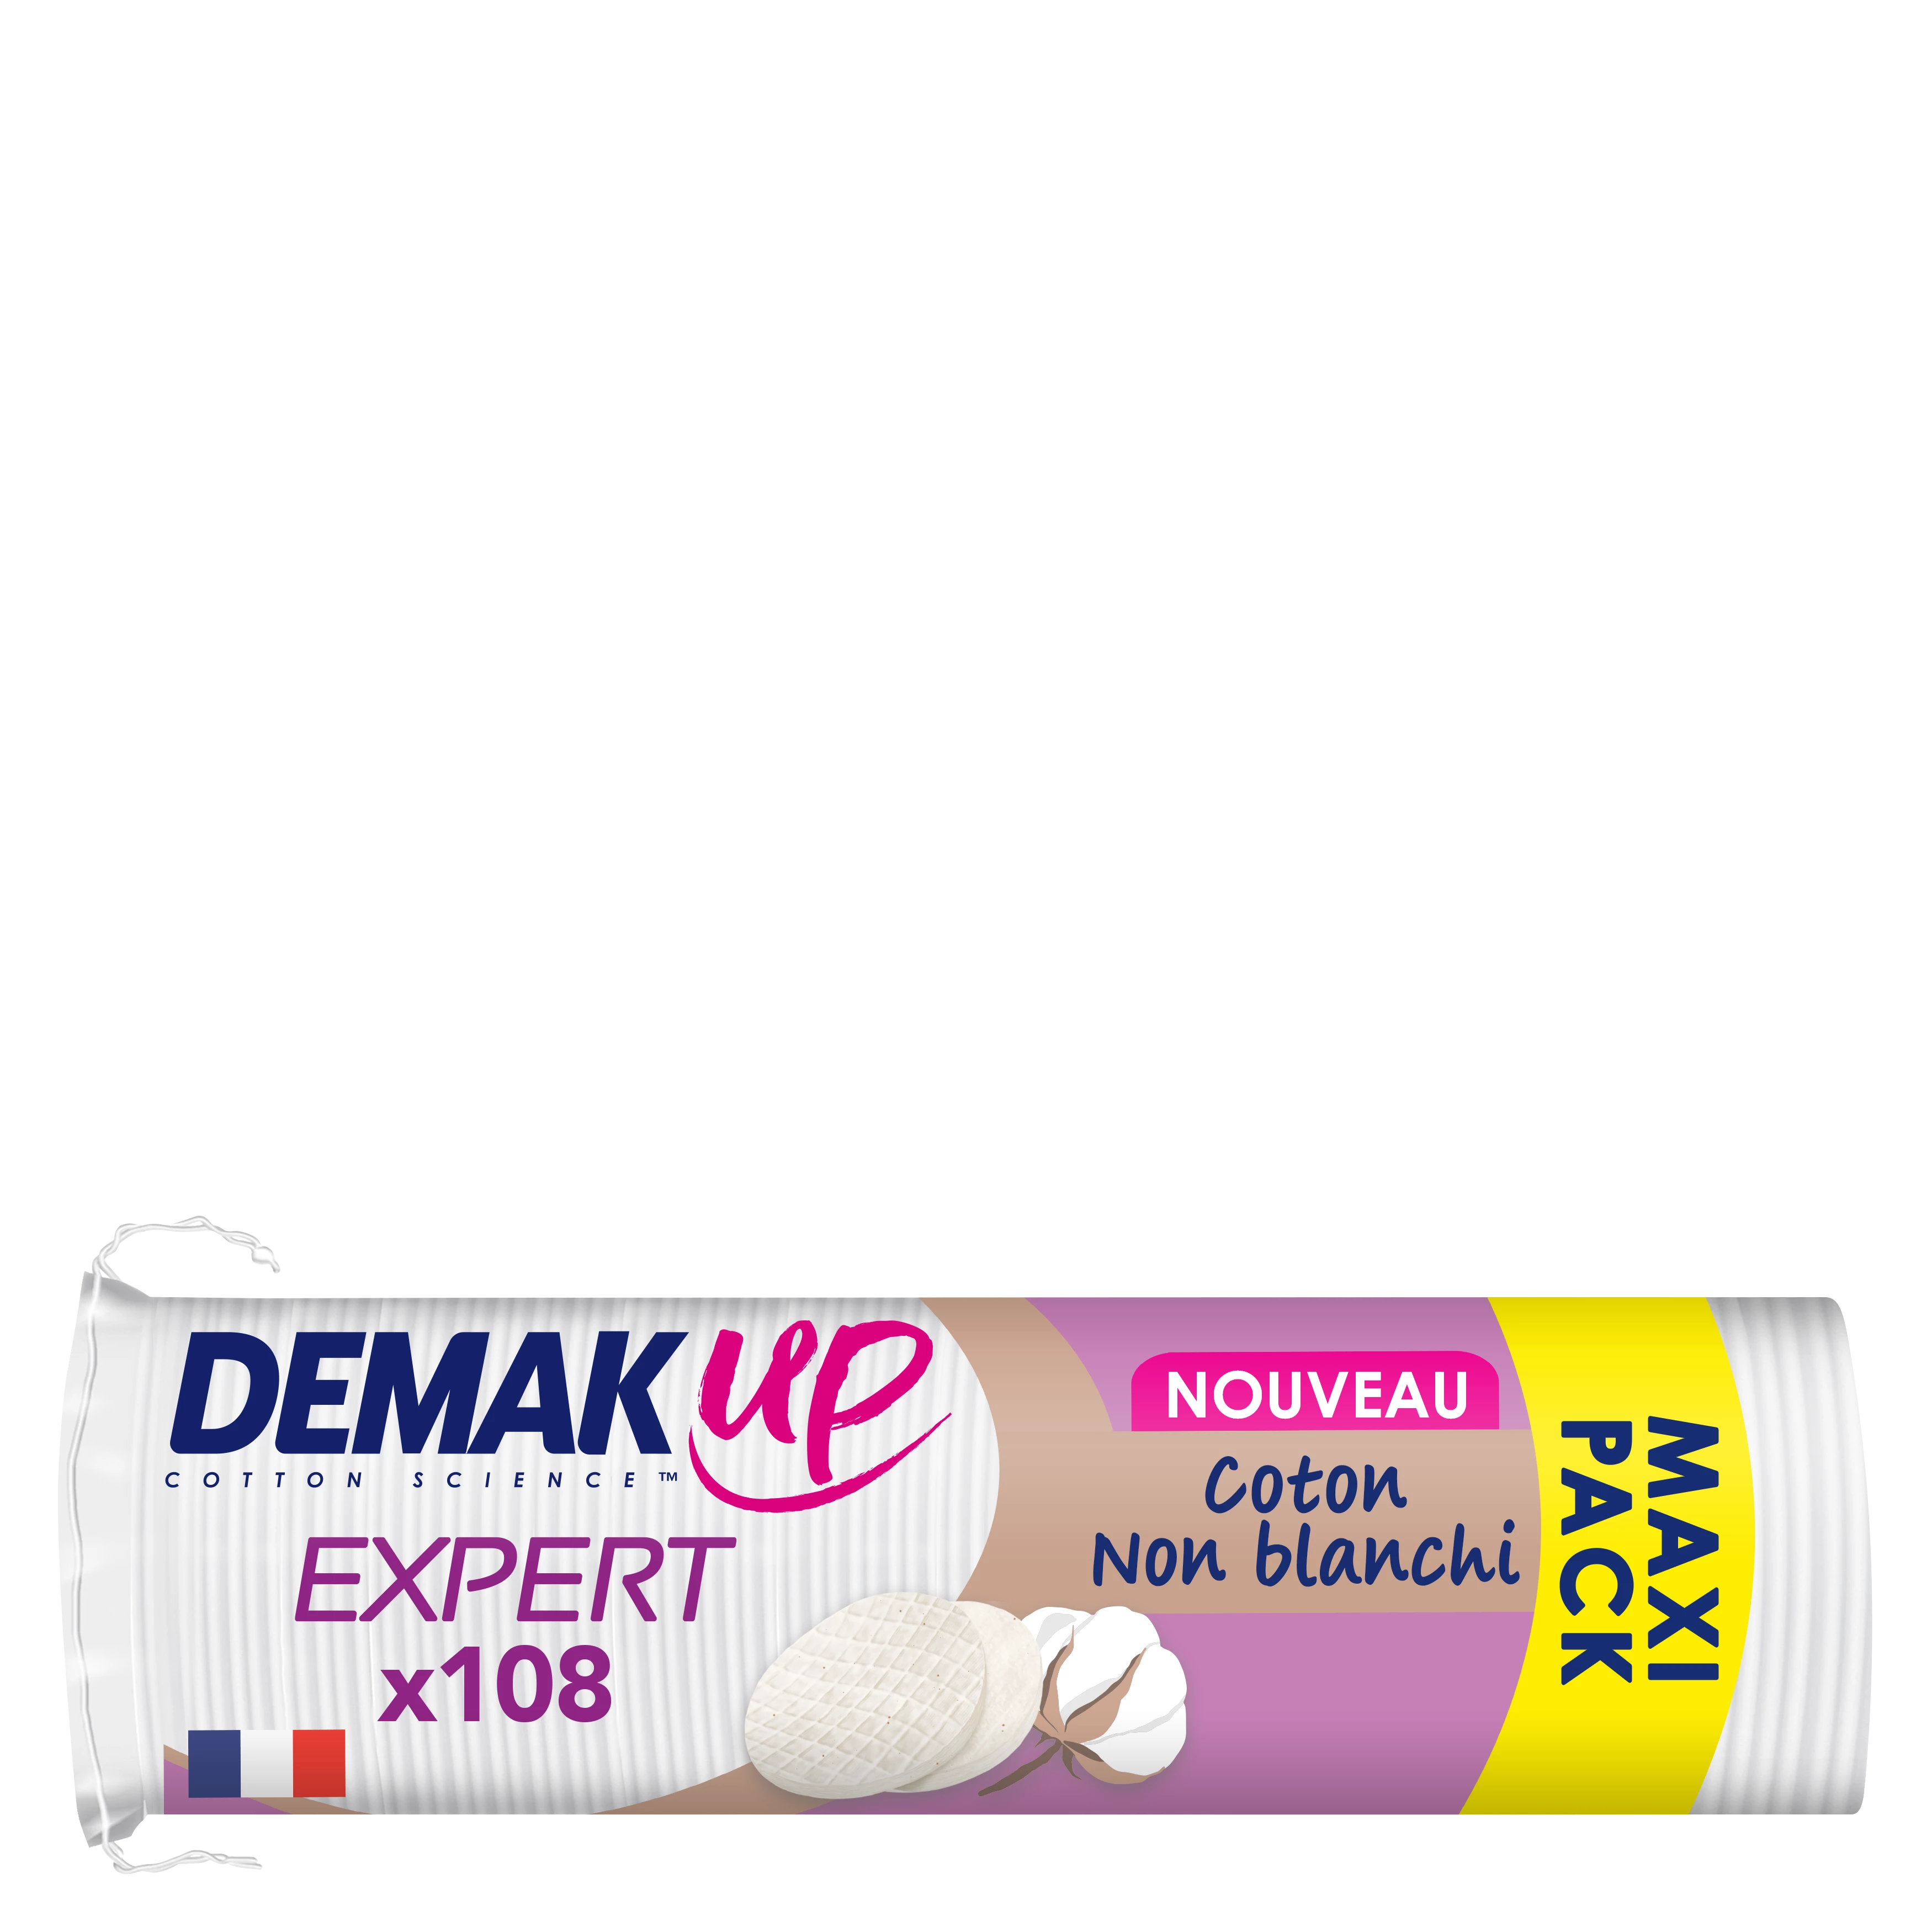 Demakup Disque à démaquiller expert X108